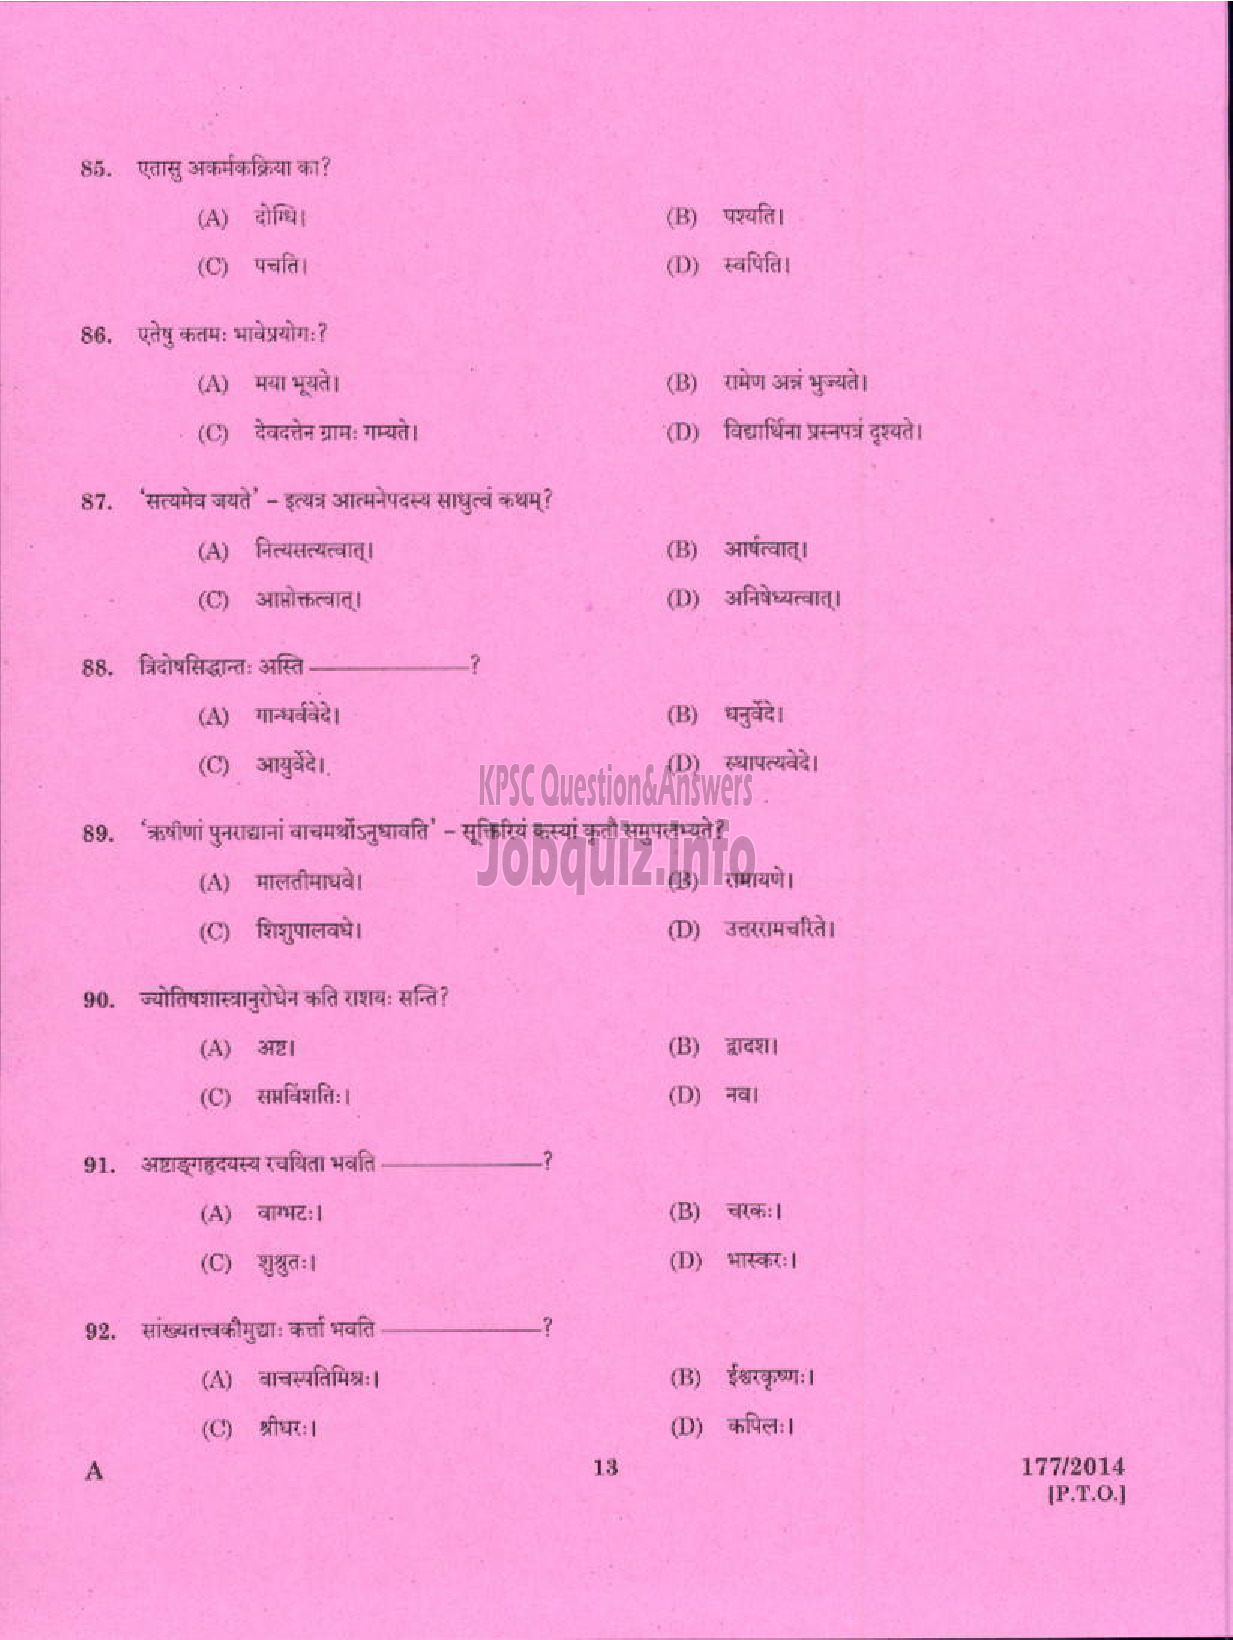 Kerala PSC Question Paper - PART TIME JUNIOR LANGUAGE TEACHER SANSKRIT EDUCATION-11